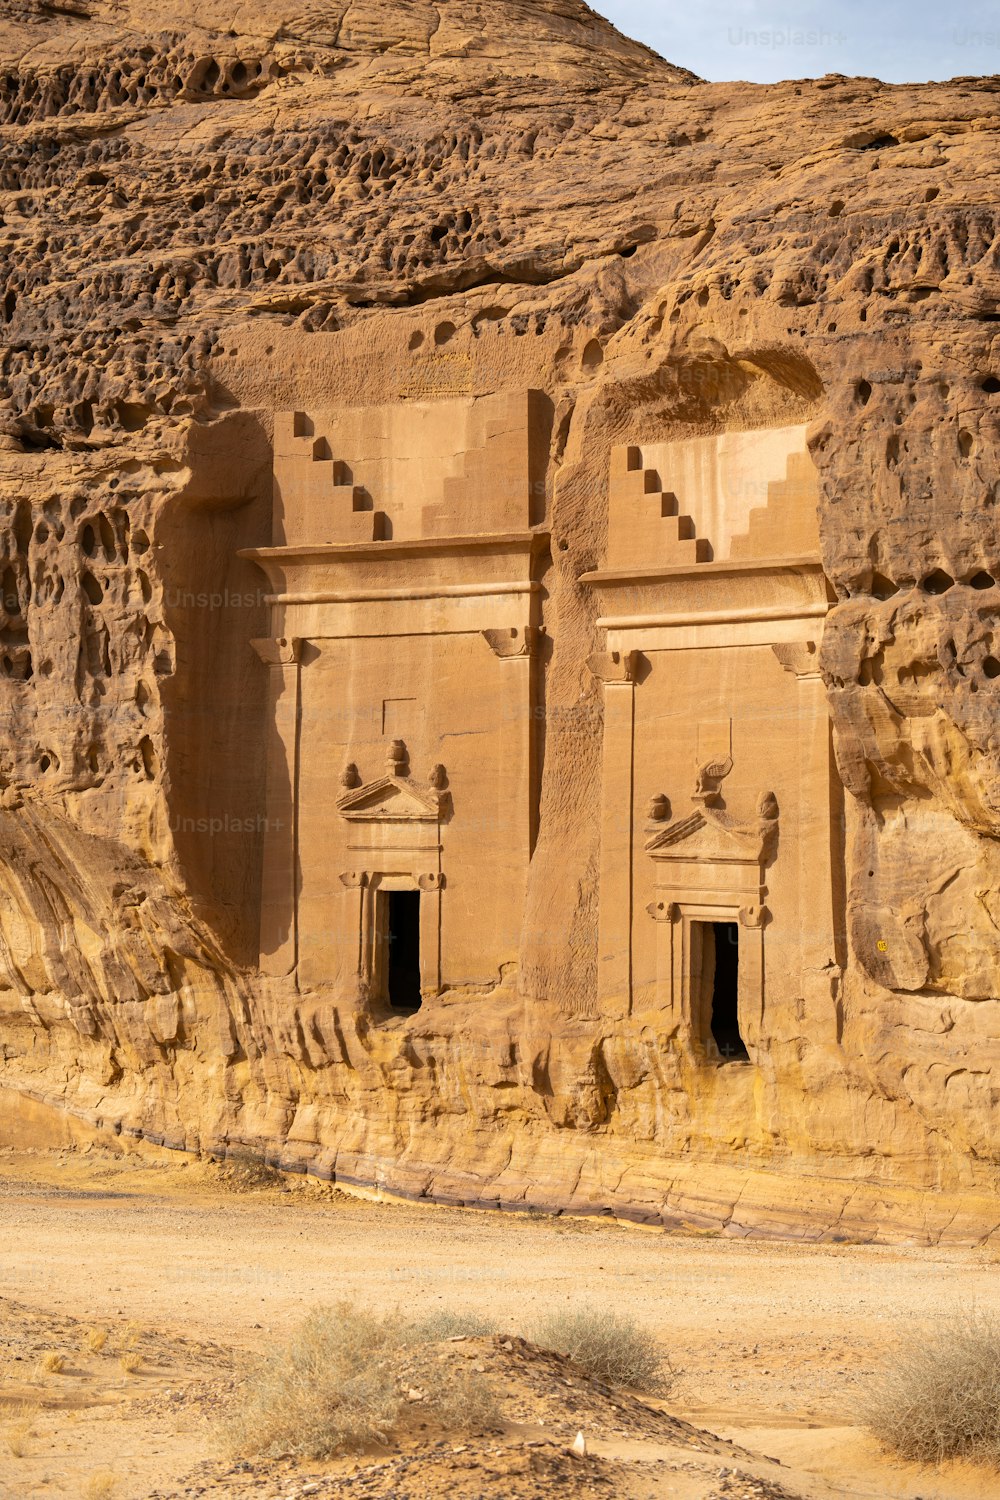 Mada'in Saleh, auch bekannt als Al-Ḥijr oder "Hegra", ist eine archäologische Stätte in der Gegend von Al-'Ula in der Region Al Madinah im Hedschas im Westen Saudi-Arabiens. Ein Großteil der verbliebenen Gräber stammt aus dem Nabatäerreich. Die Stätte ist nach der Hauptstadt Petra die südlichste und größte Siedlung des Königreichs.